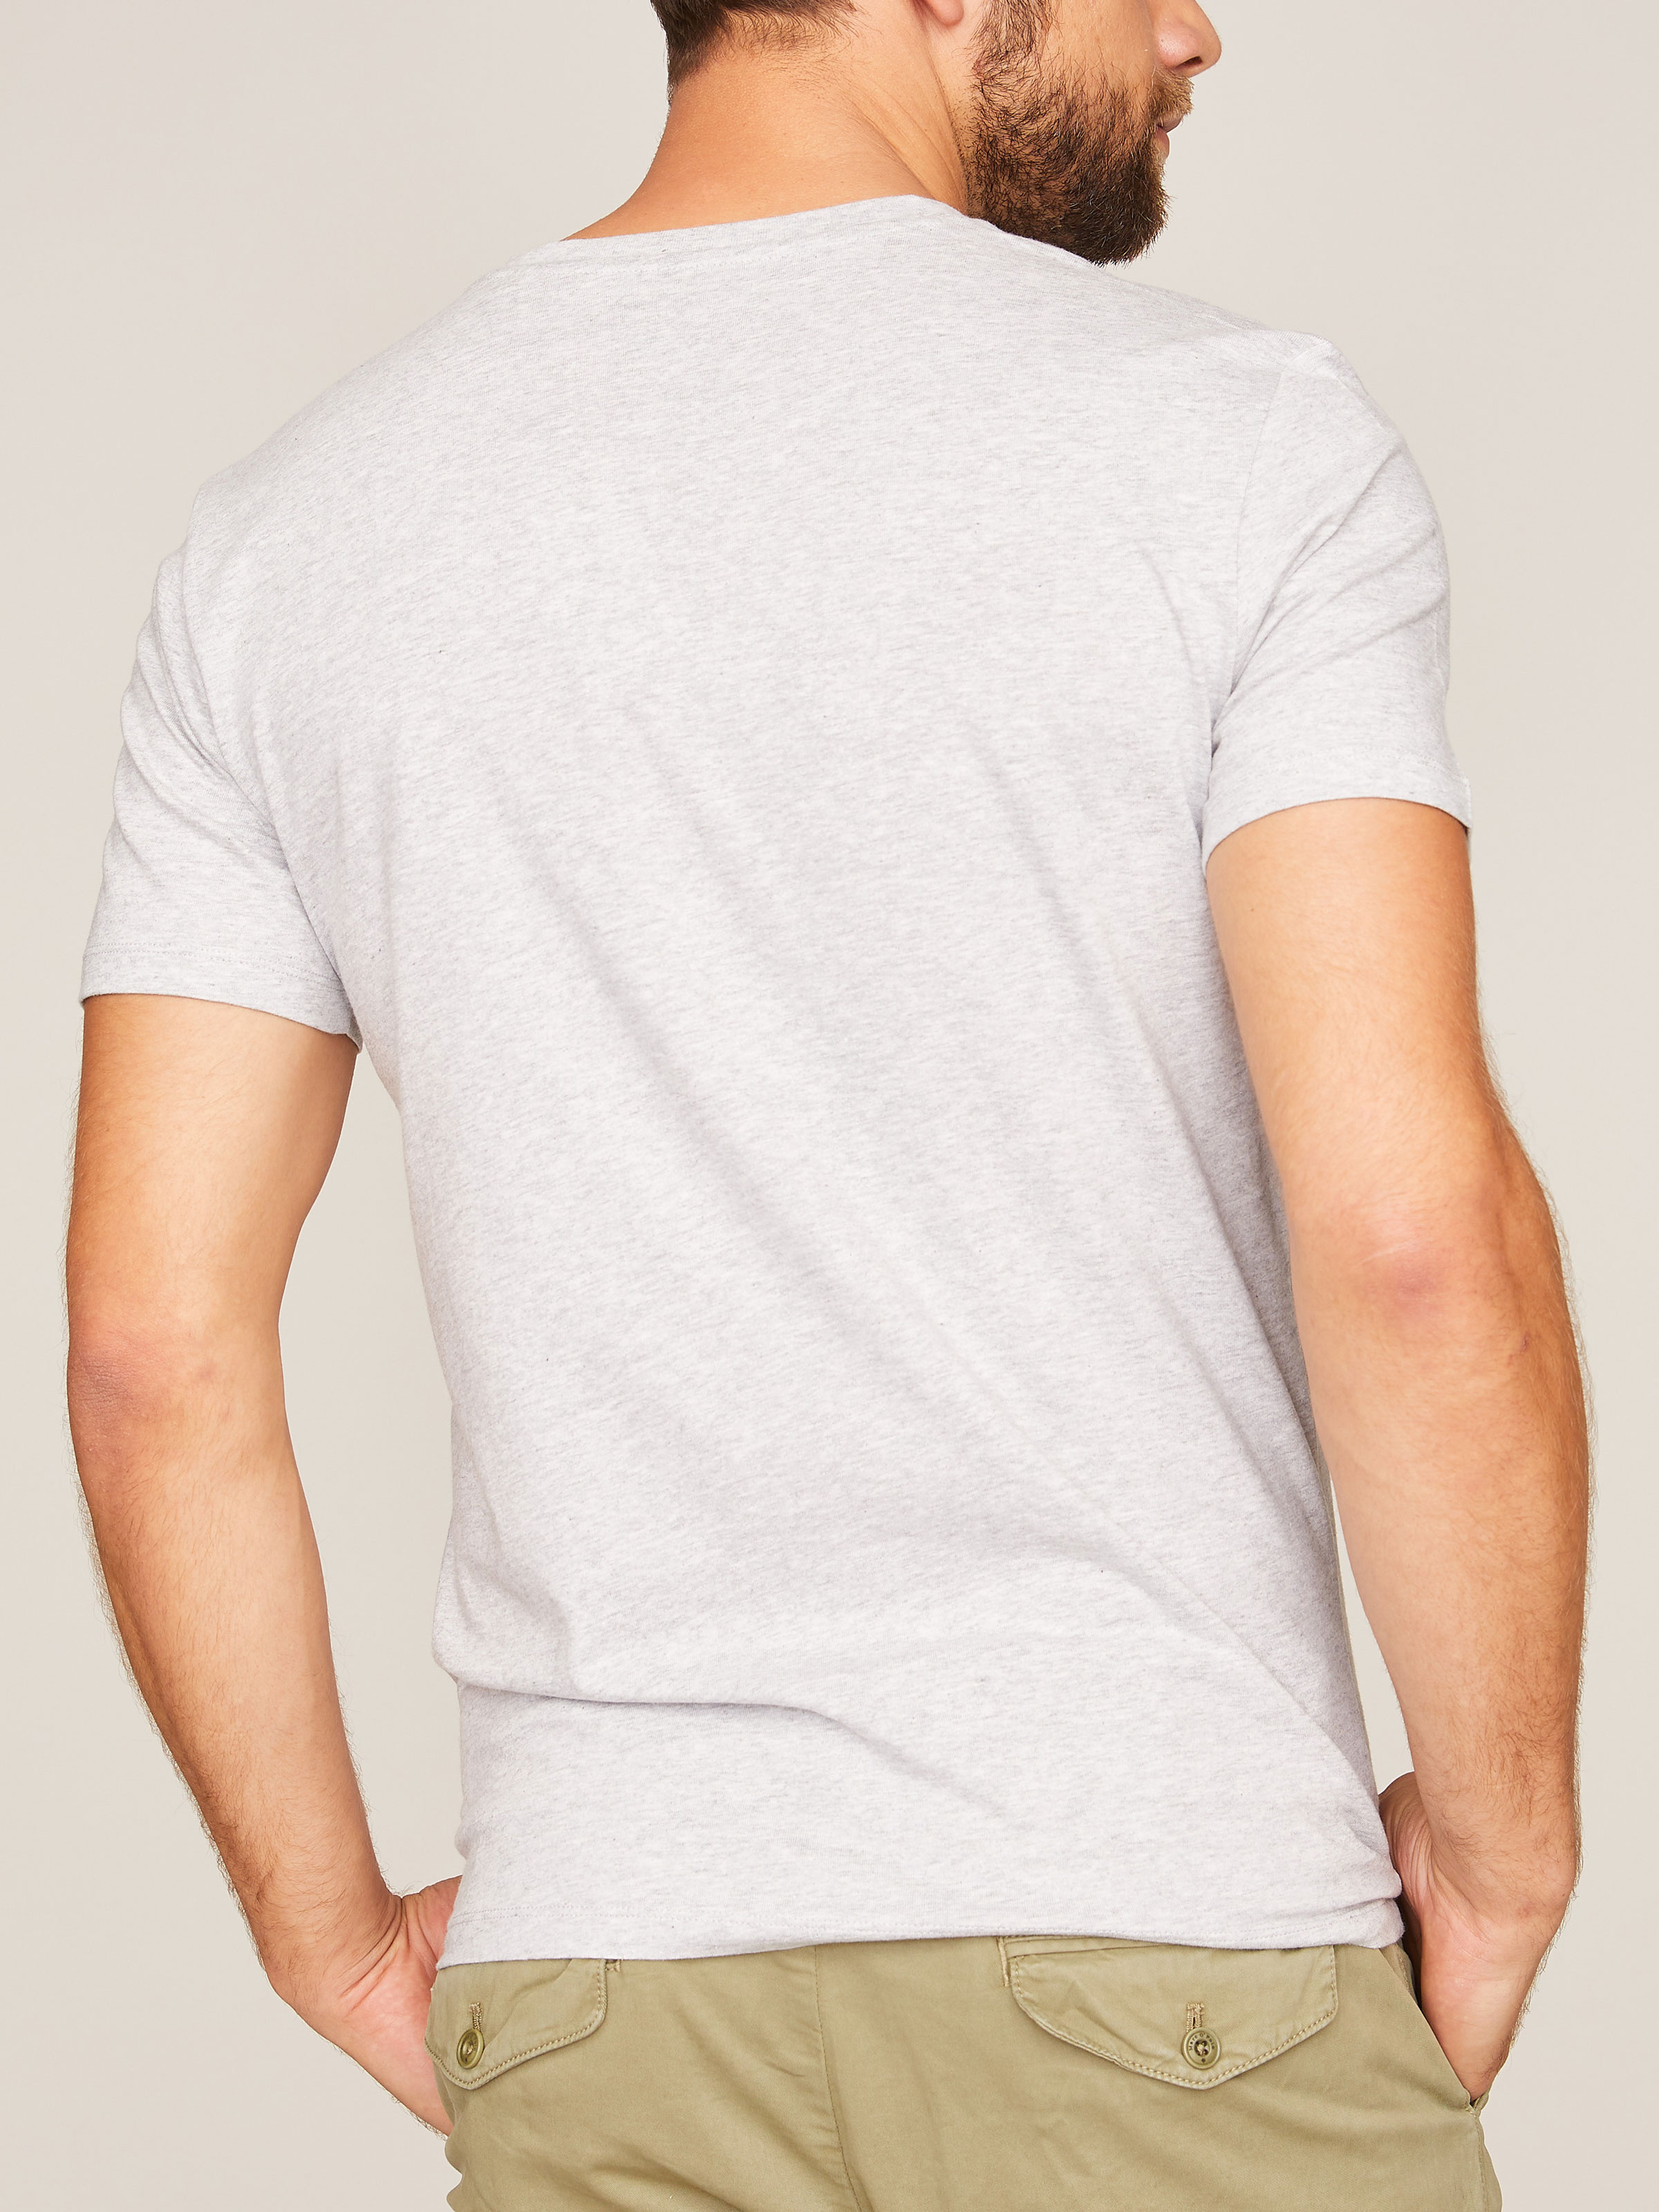 Grau meliertes T-Shirt mit Logoprint auf der Brust